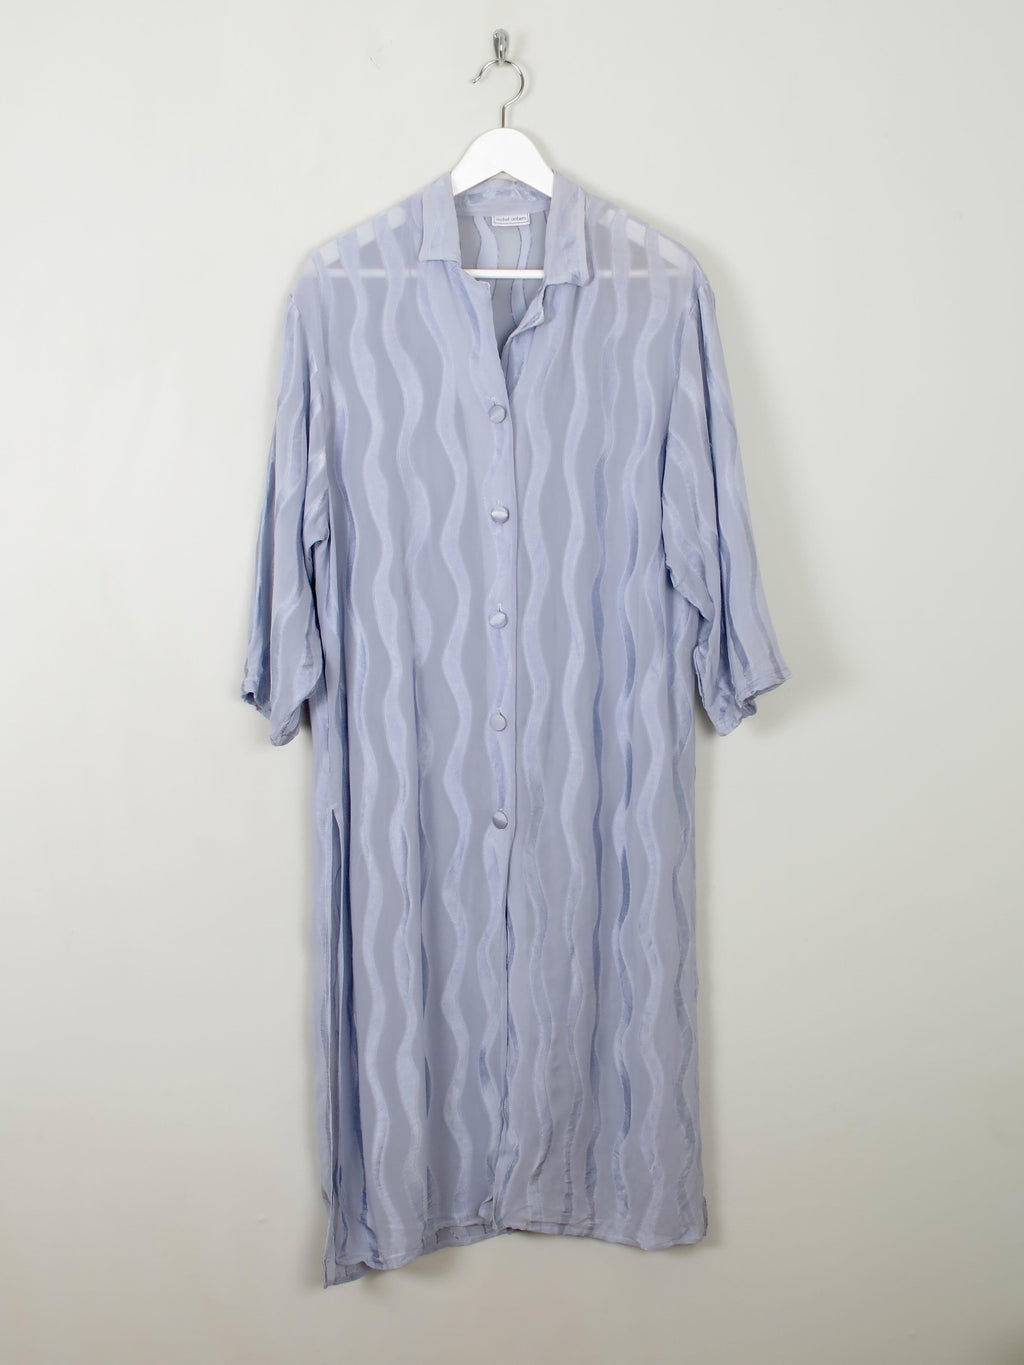 Blue Devore Vintage Shirt Dress S/M/L - The Harlequin